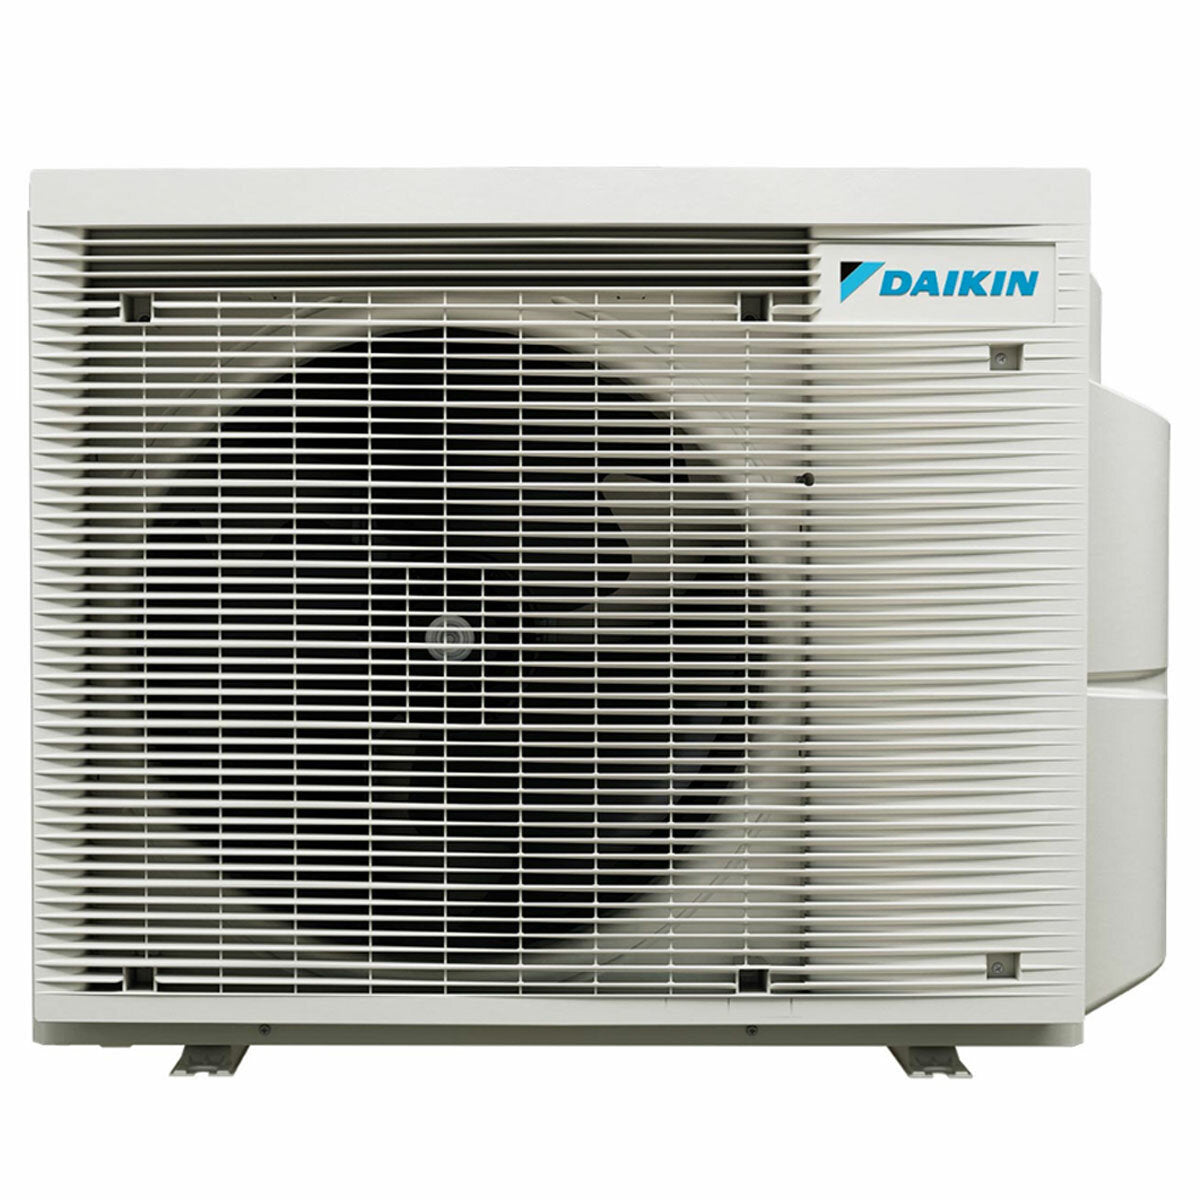 Daikin Emura 3 Trial Split Klimaanlage 7000+9000+9000 BTU Inverter A++ WLAN Außengerät 4 kW Weiß